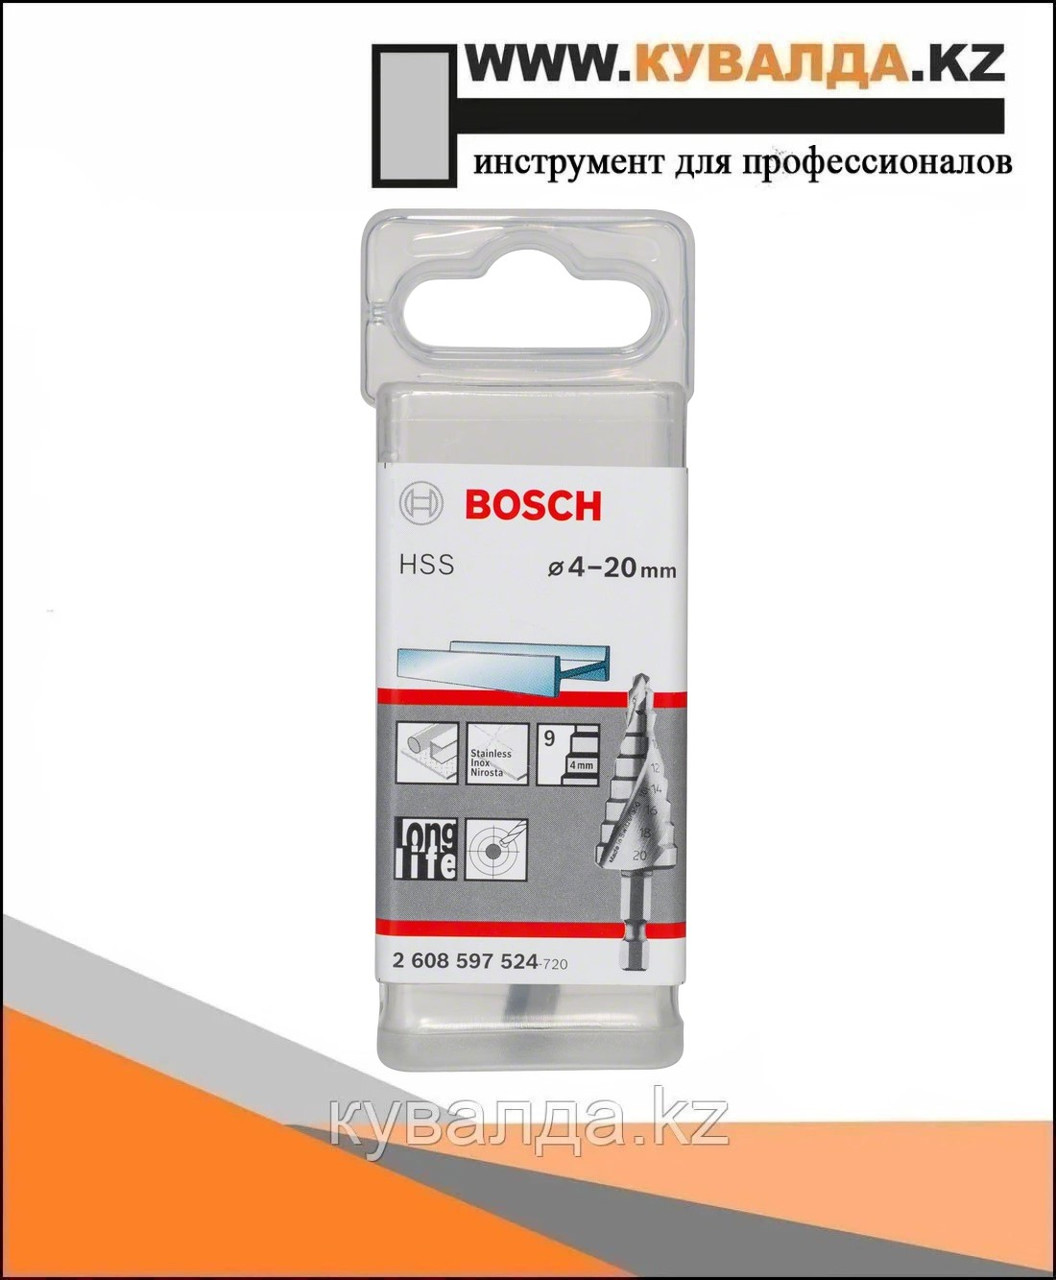 Bosch Ступ сверло HSS 9 ступ 4-20 мм hex 1/4"